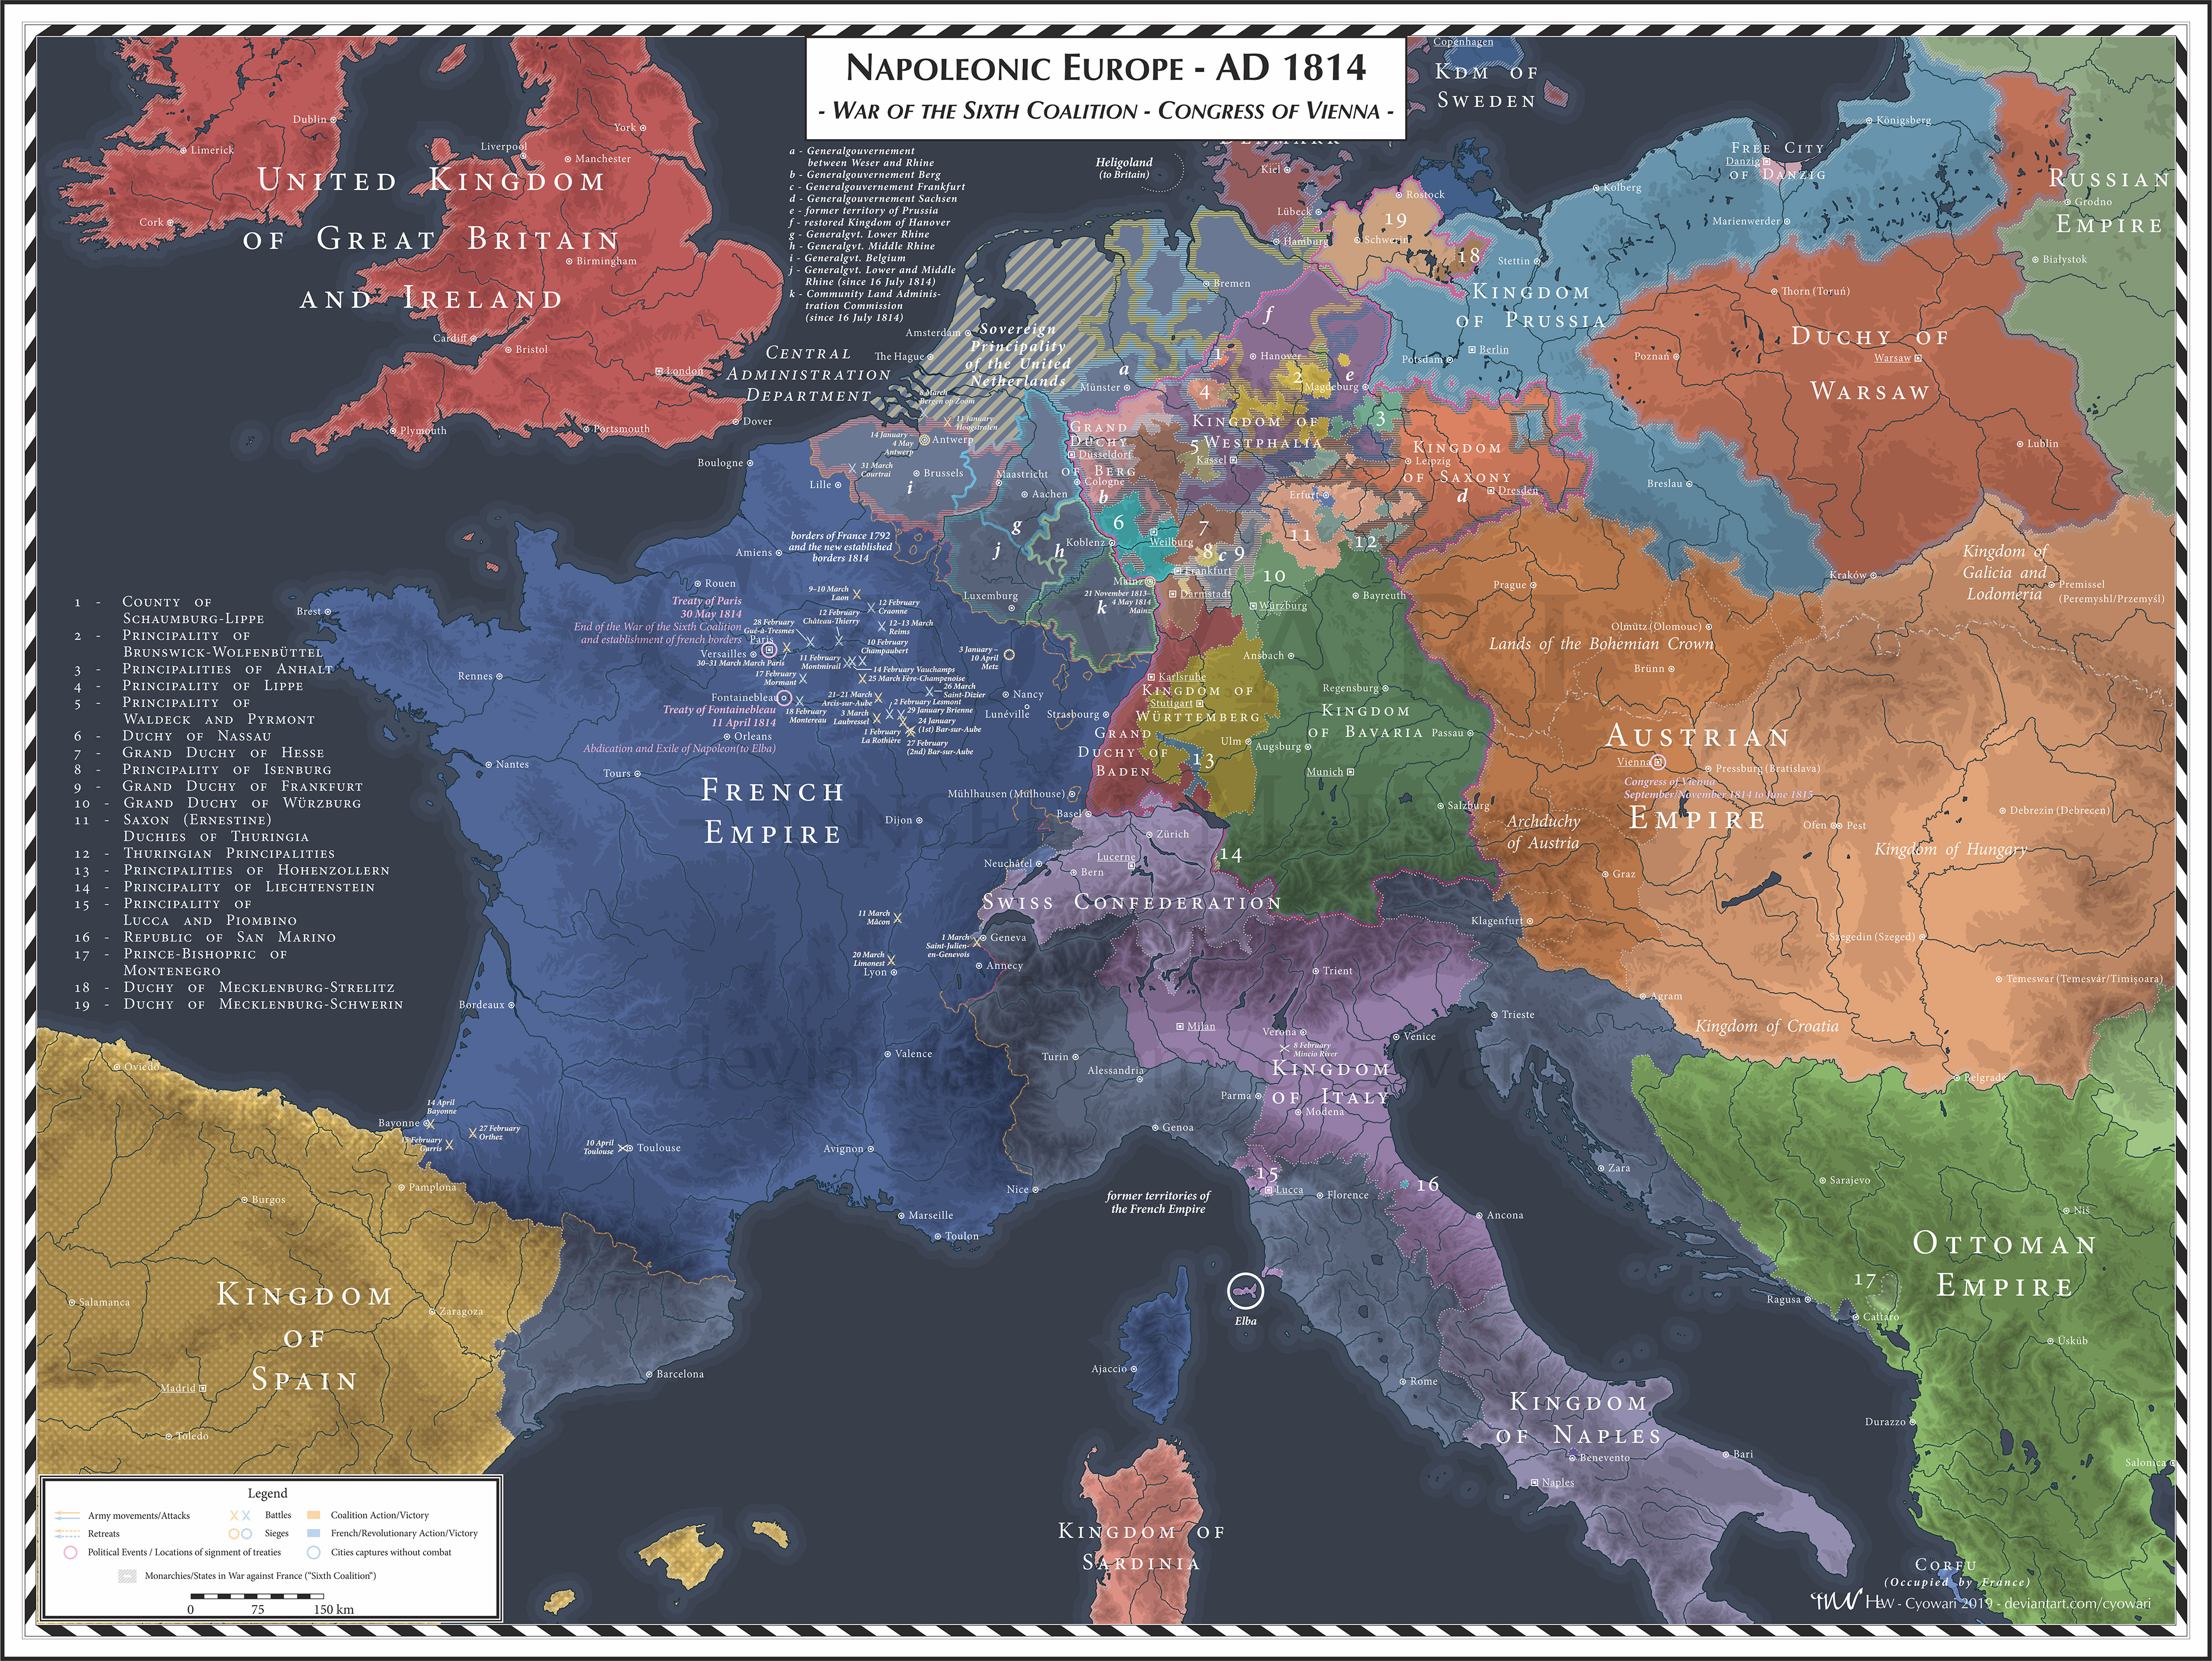 Napoleonic Europe - 1814 - Sixth Coalition